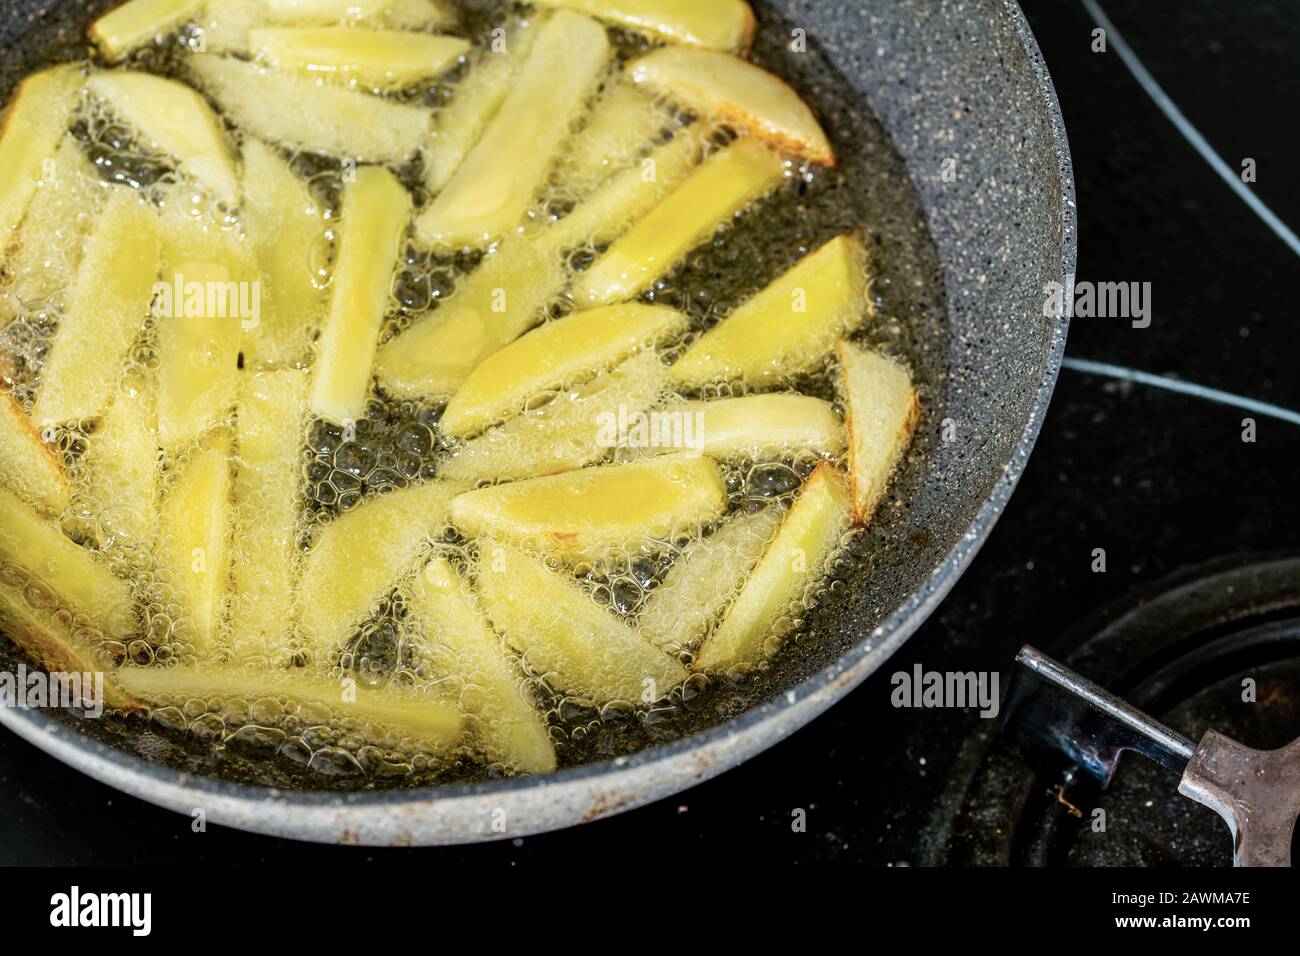 Les frites frire dans de l'huile végétale dans la poêle de la cuisinière Banque D'Images